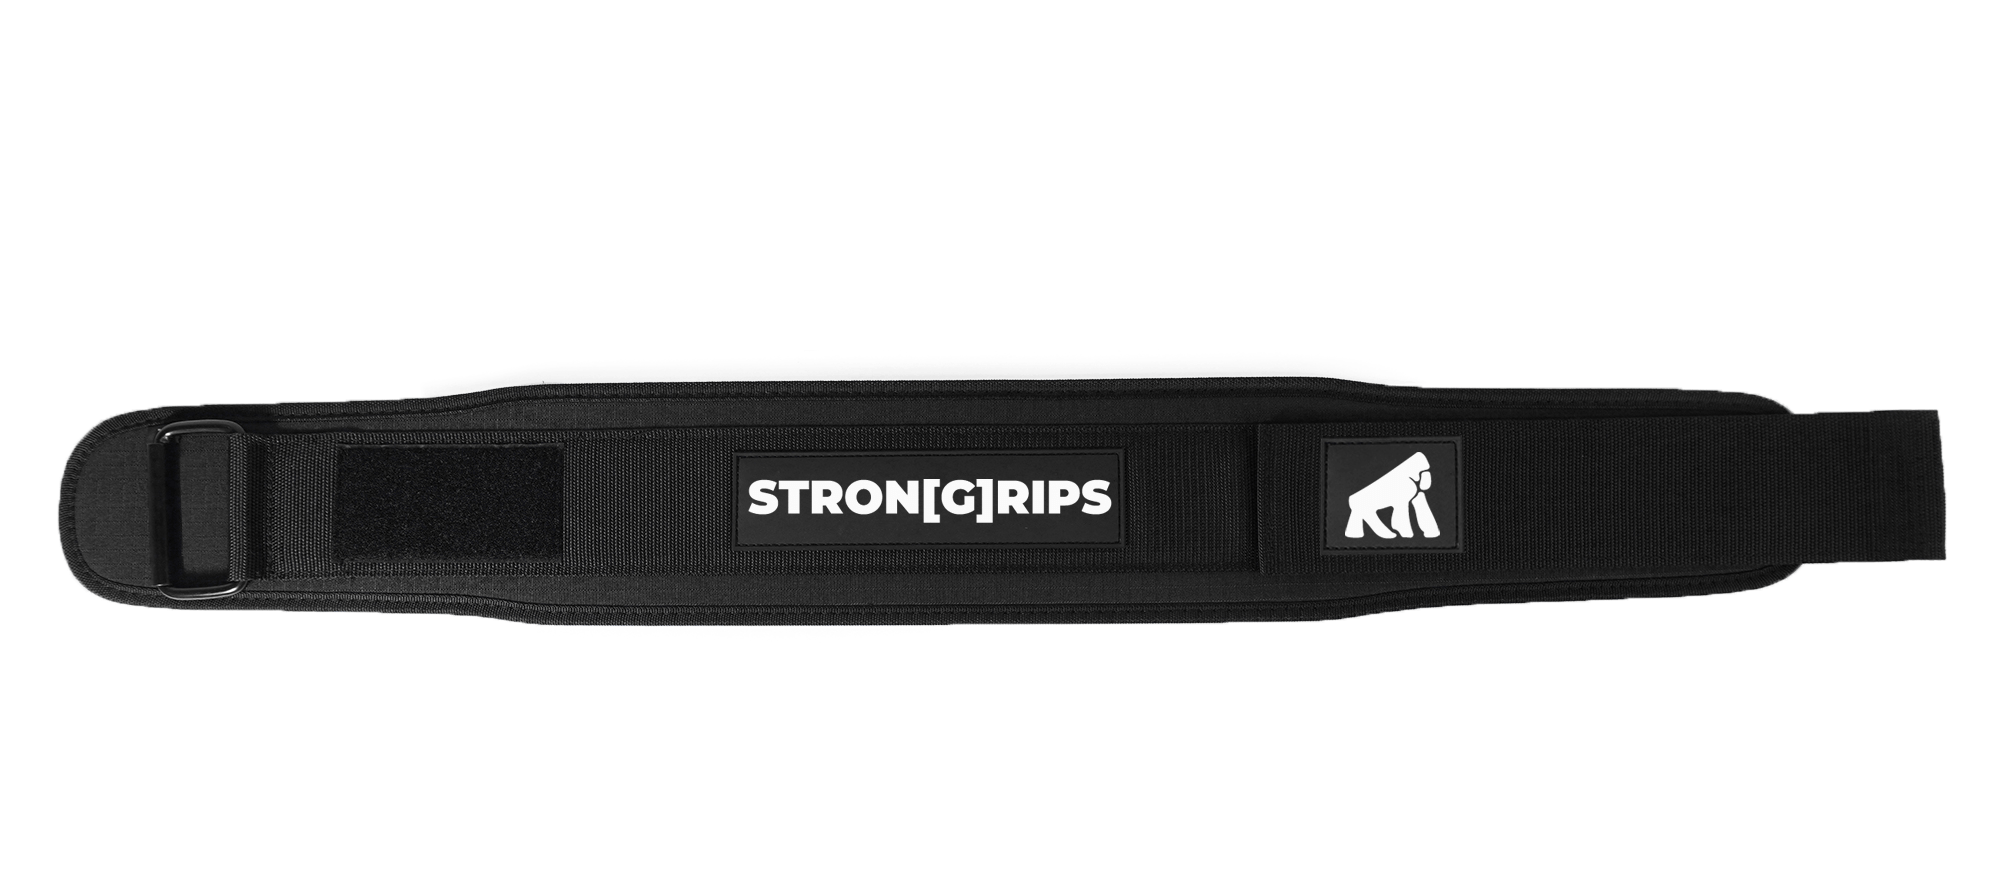 StronGrips ağırlık kemeri ile belinize tam destek